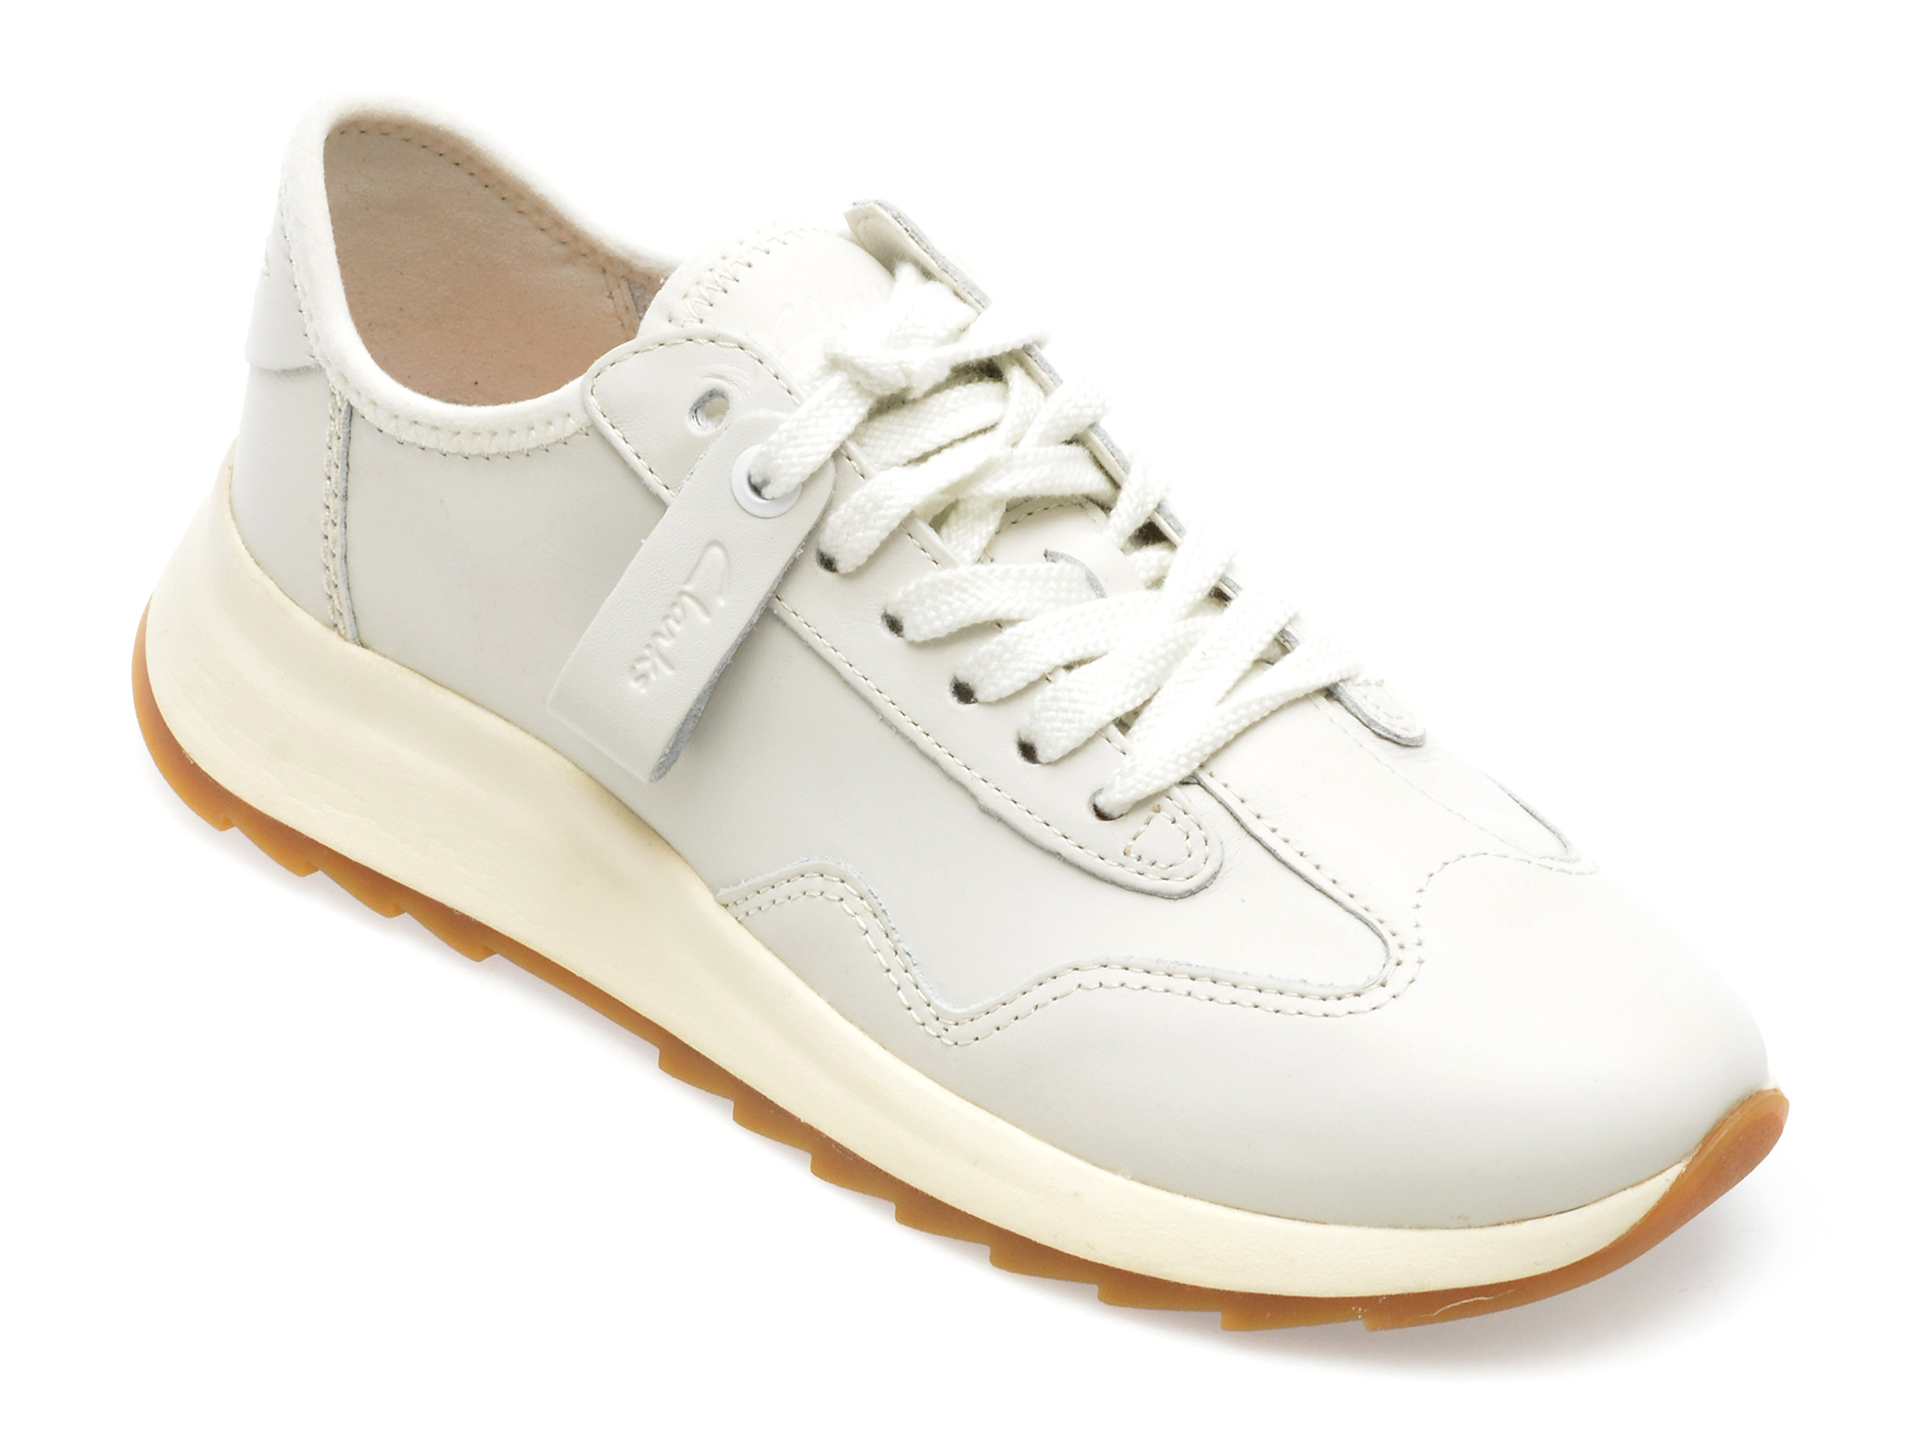 Pantofi CLARKS albi, DASLILO, din piele naturala